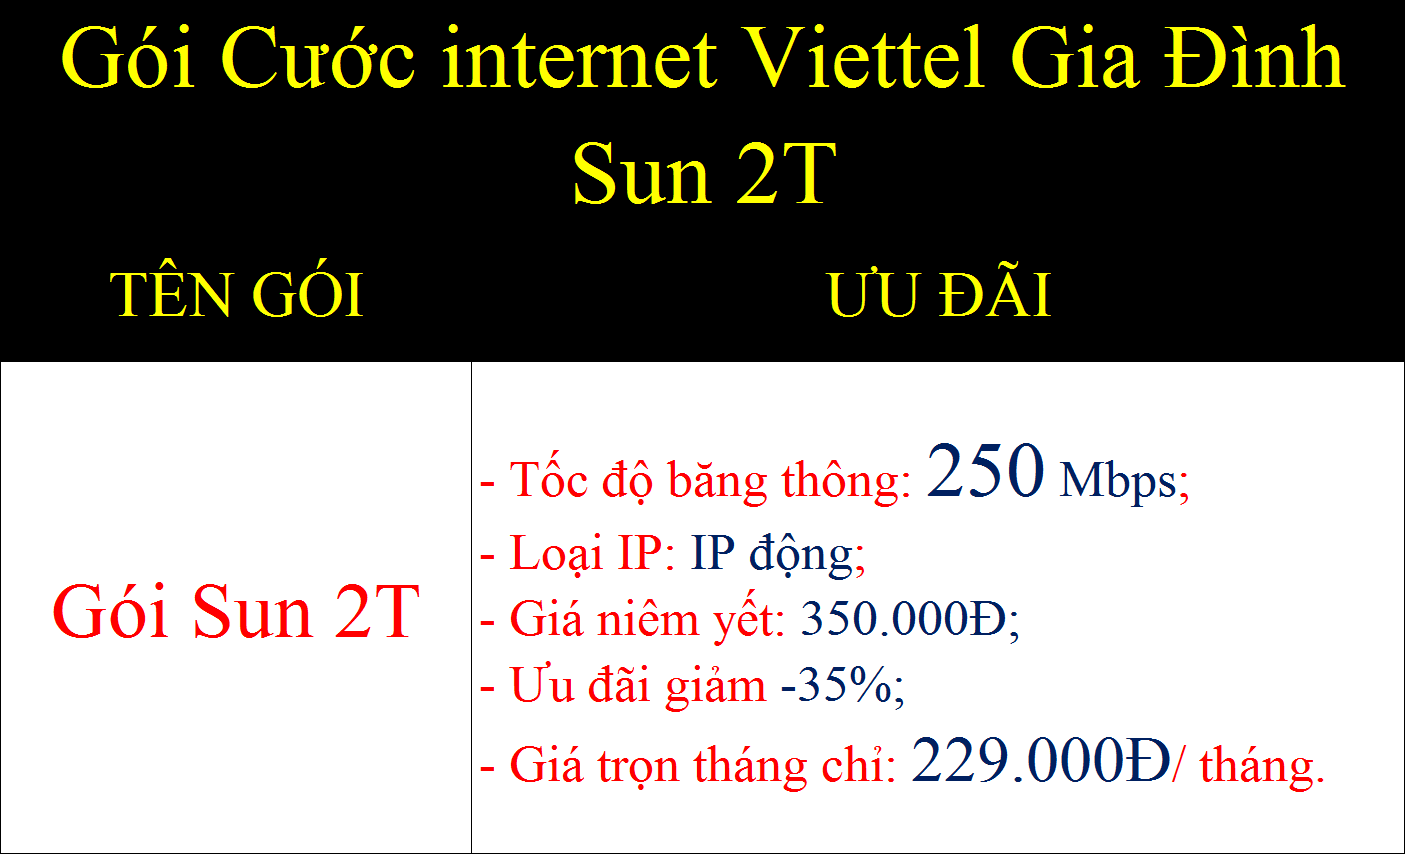 Gói cước internet Viettel gia đình Sun 2T